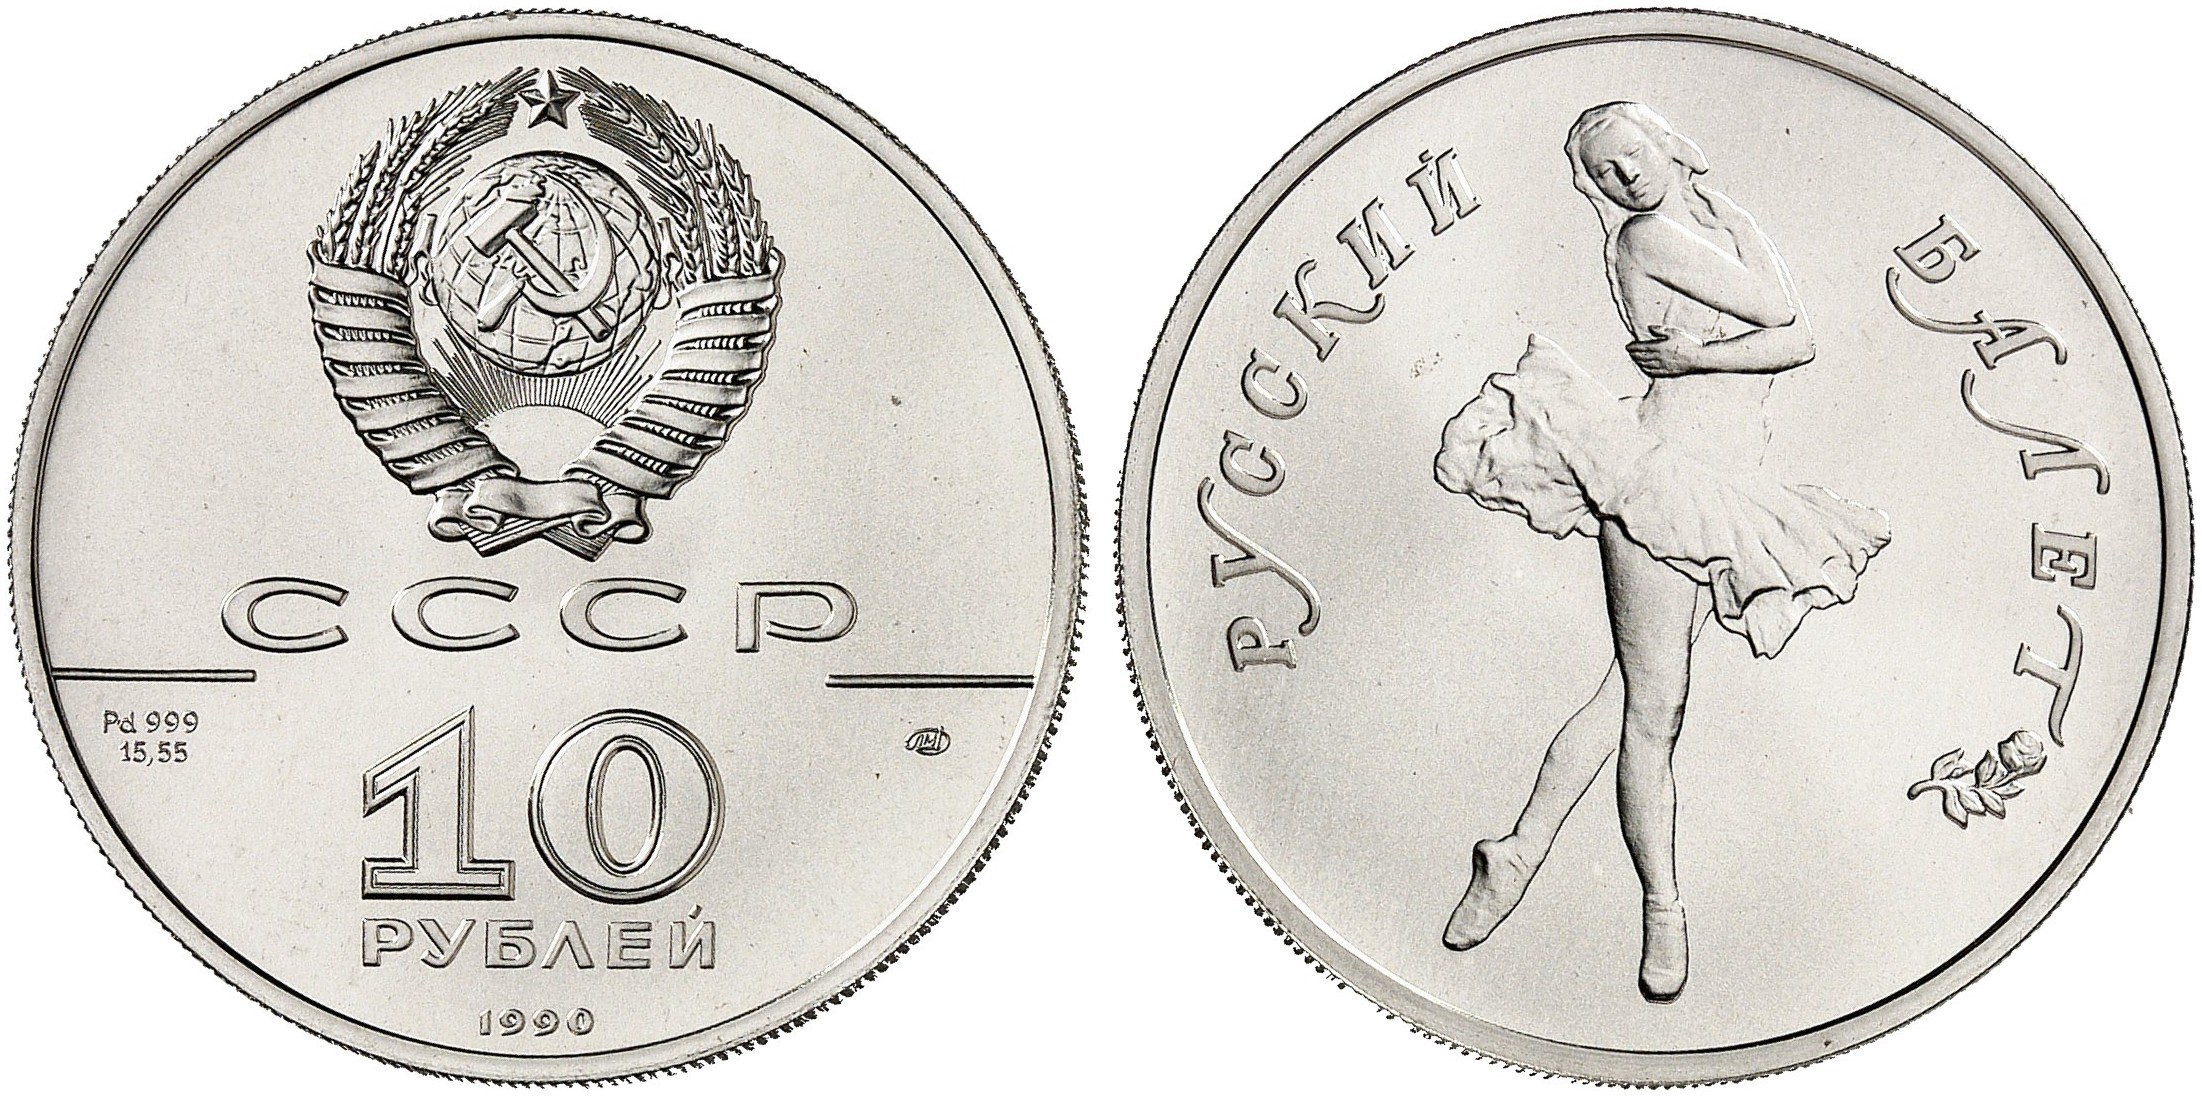 260 Евро в рублях.